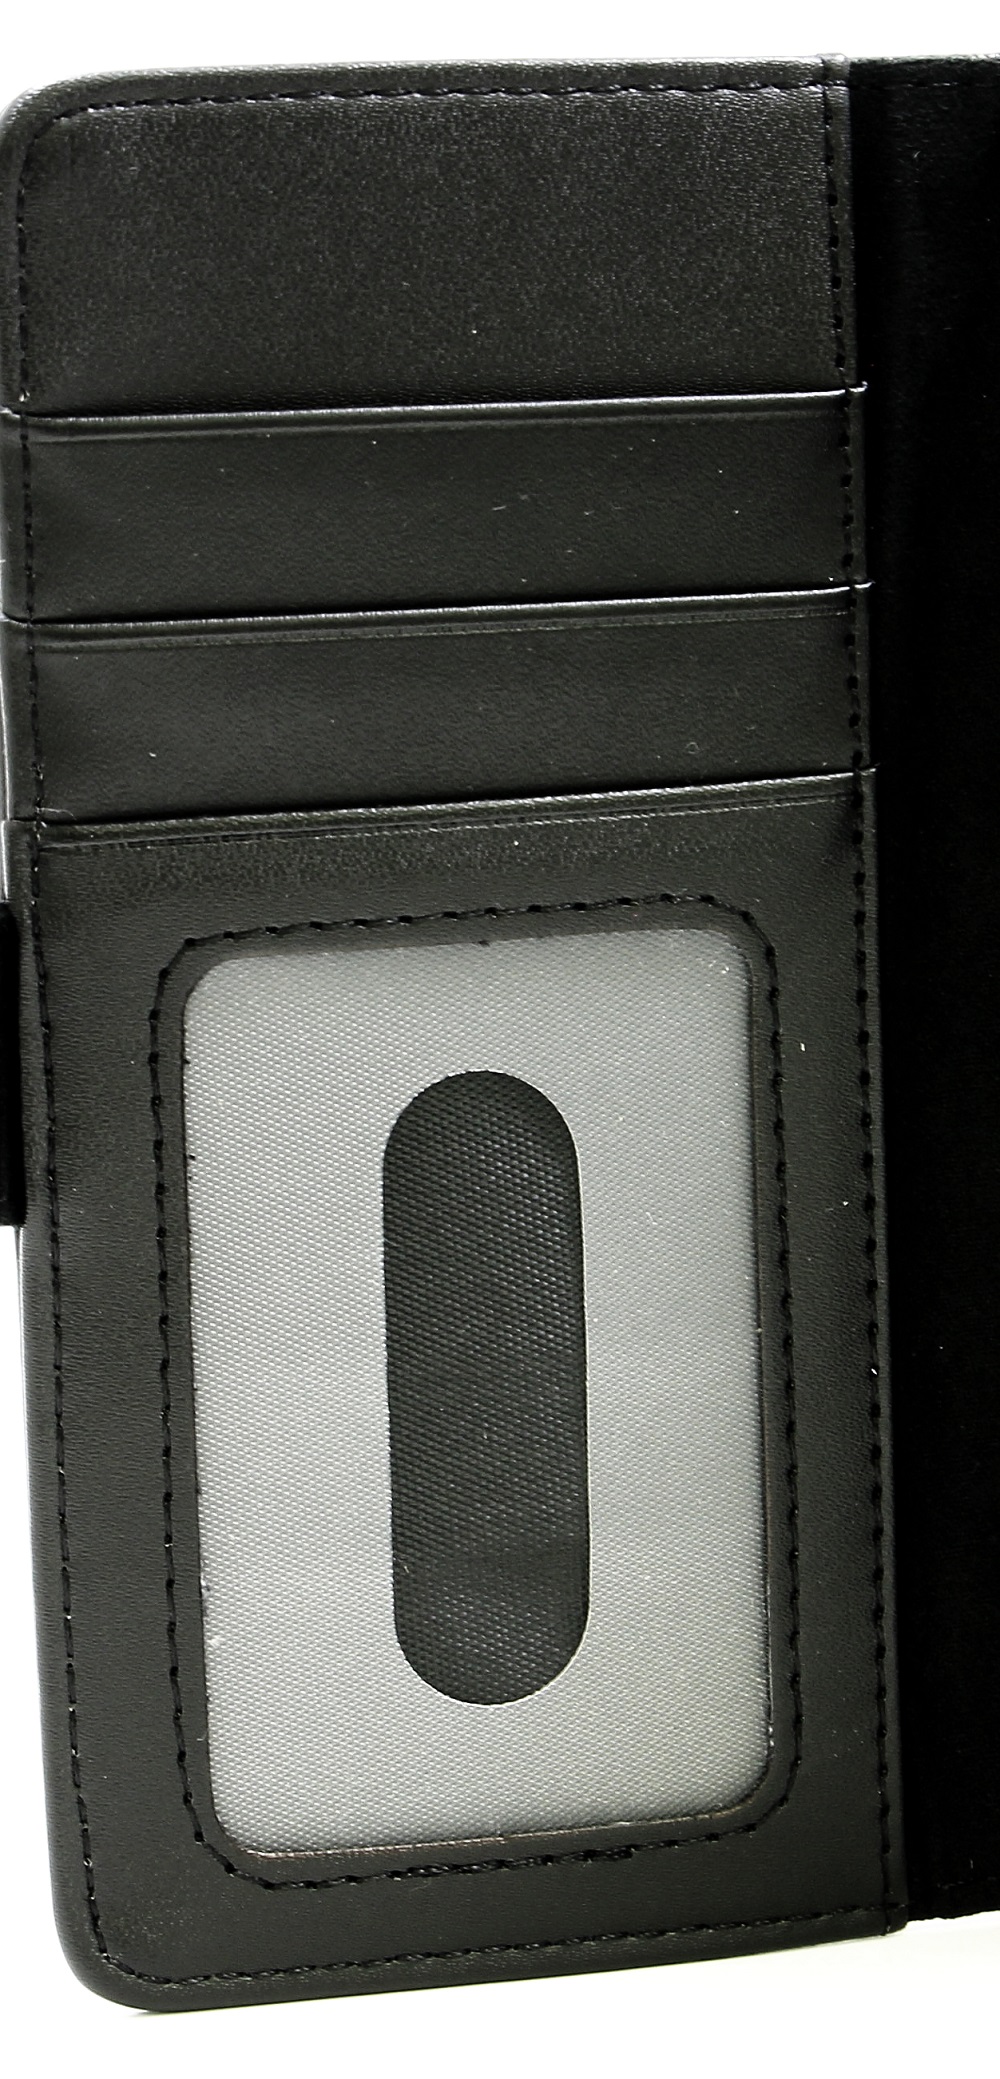 Lommebok-etui Sony Xperia XZ1 (G8341)